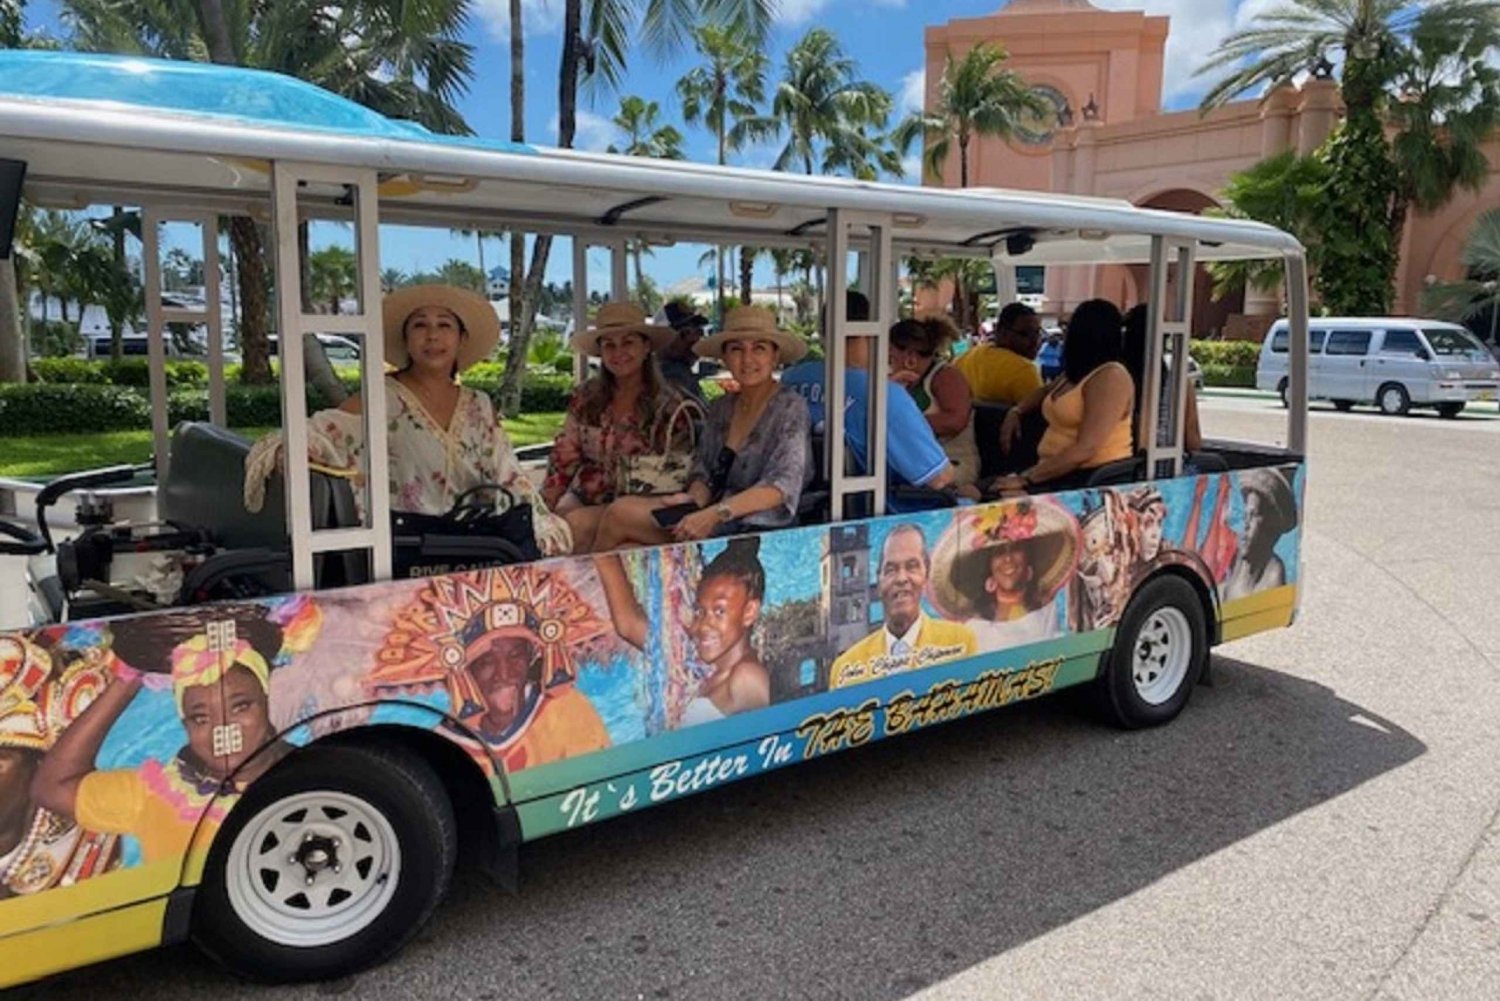 Nassau: Bahamas Kultur Tour mit Elektro-Trolley und Wasser